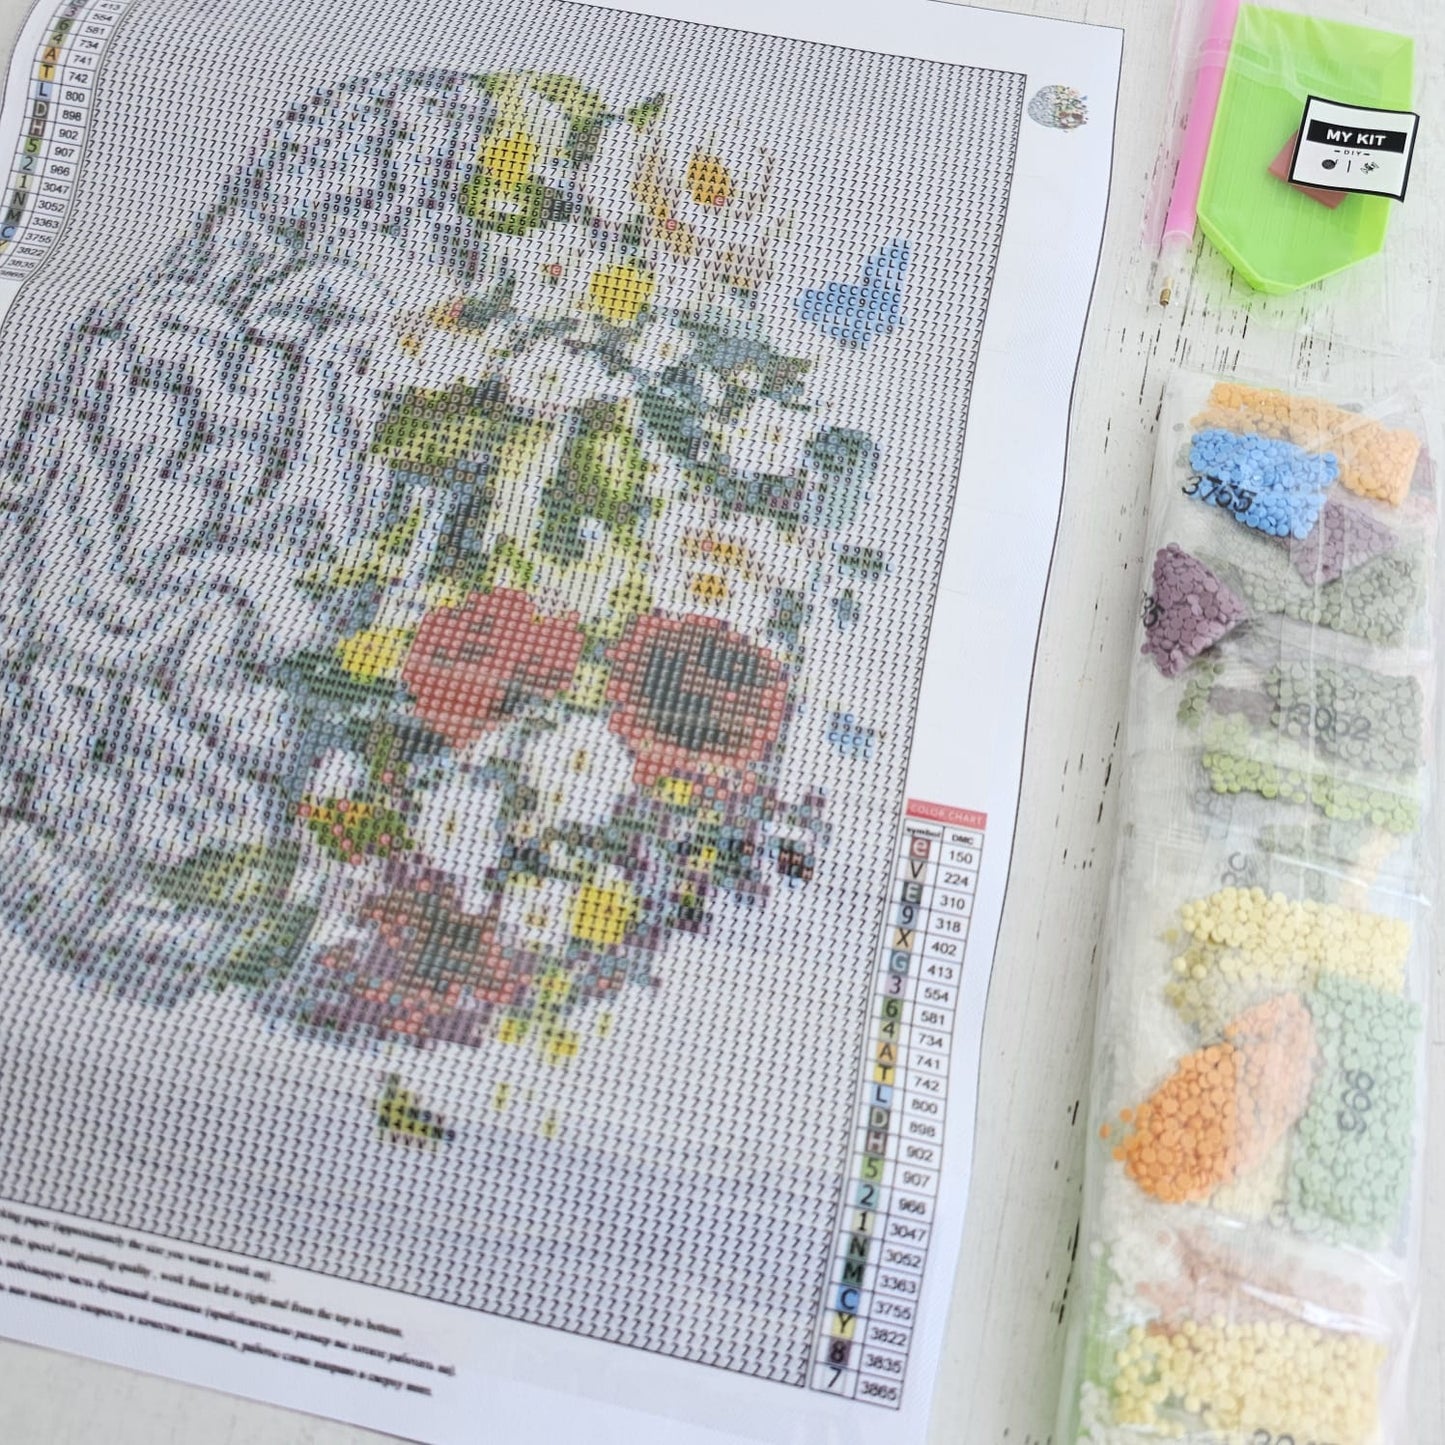 Kit pinta con diamantes 30x40 cm - Cerebro con flores